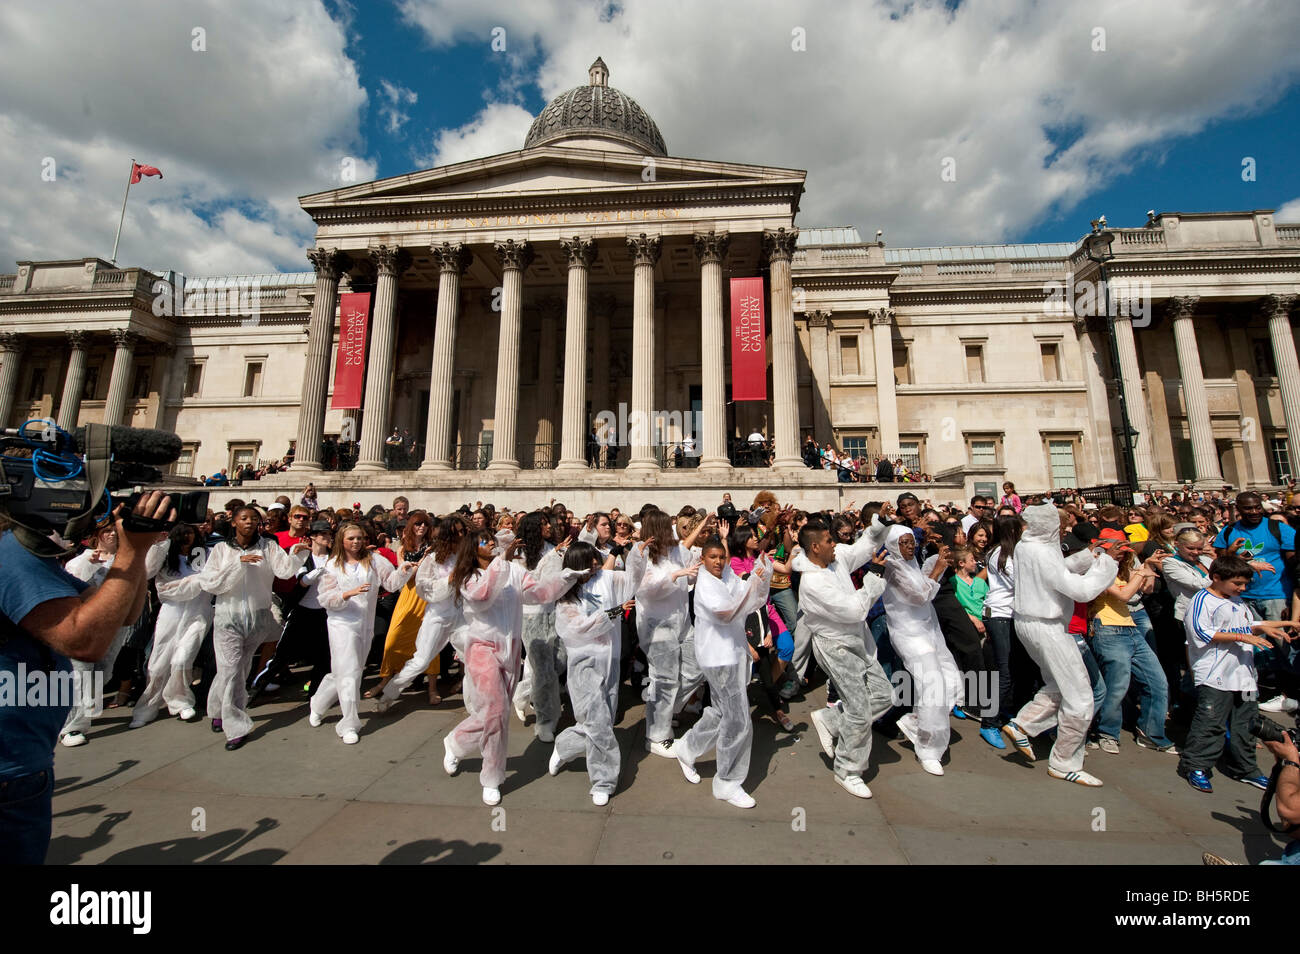 Michael Jackson fans de recréer le célèbre Thriller Dance à Trafalgar Square à Londres Banque D'Images